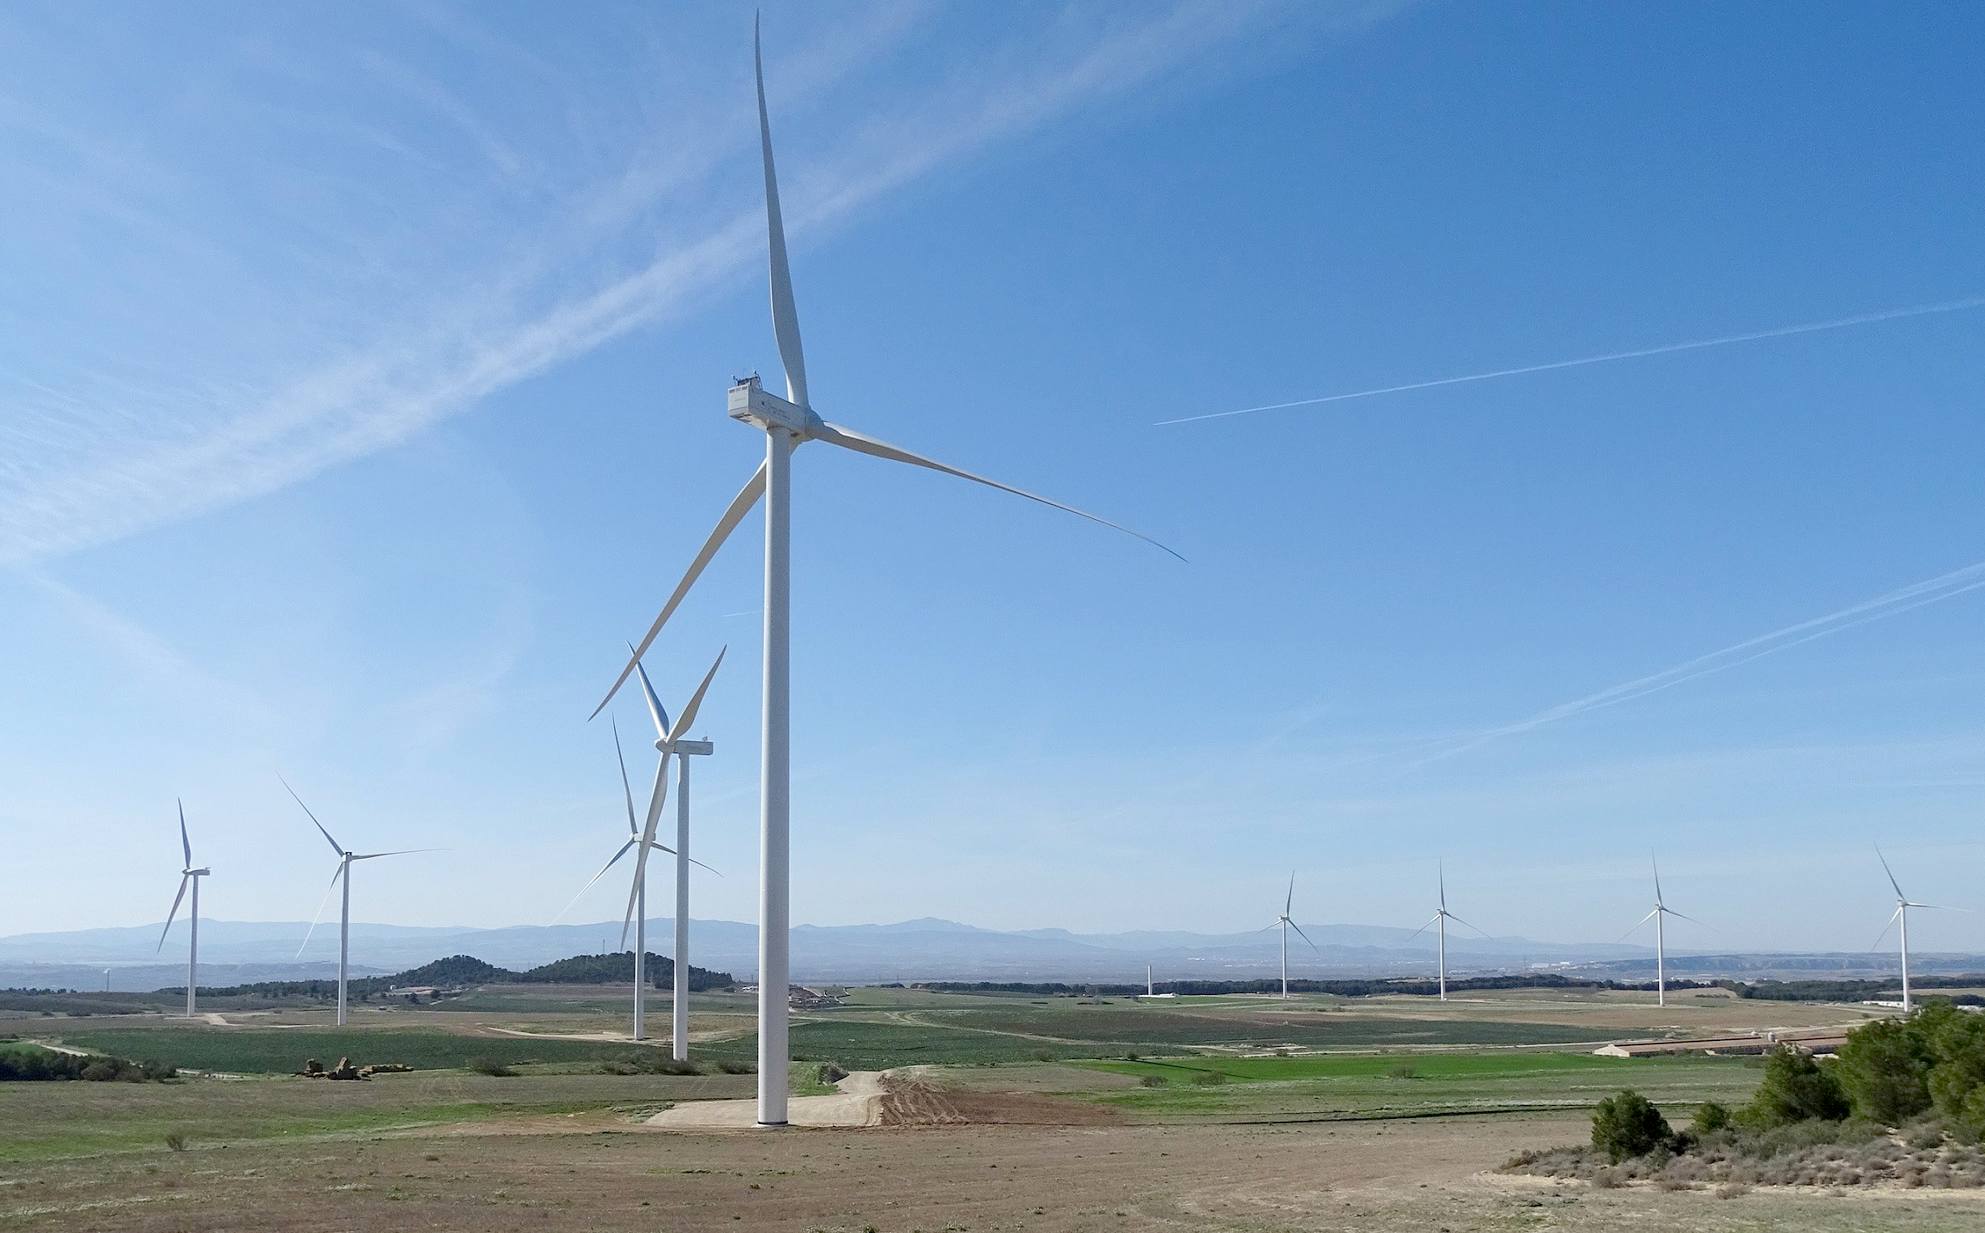 Nike's wind farm in Spain